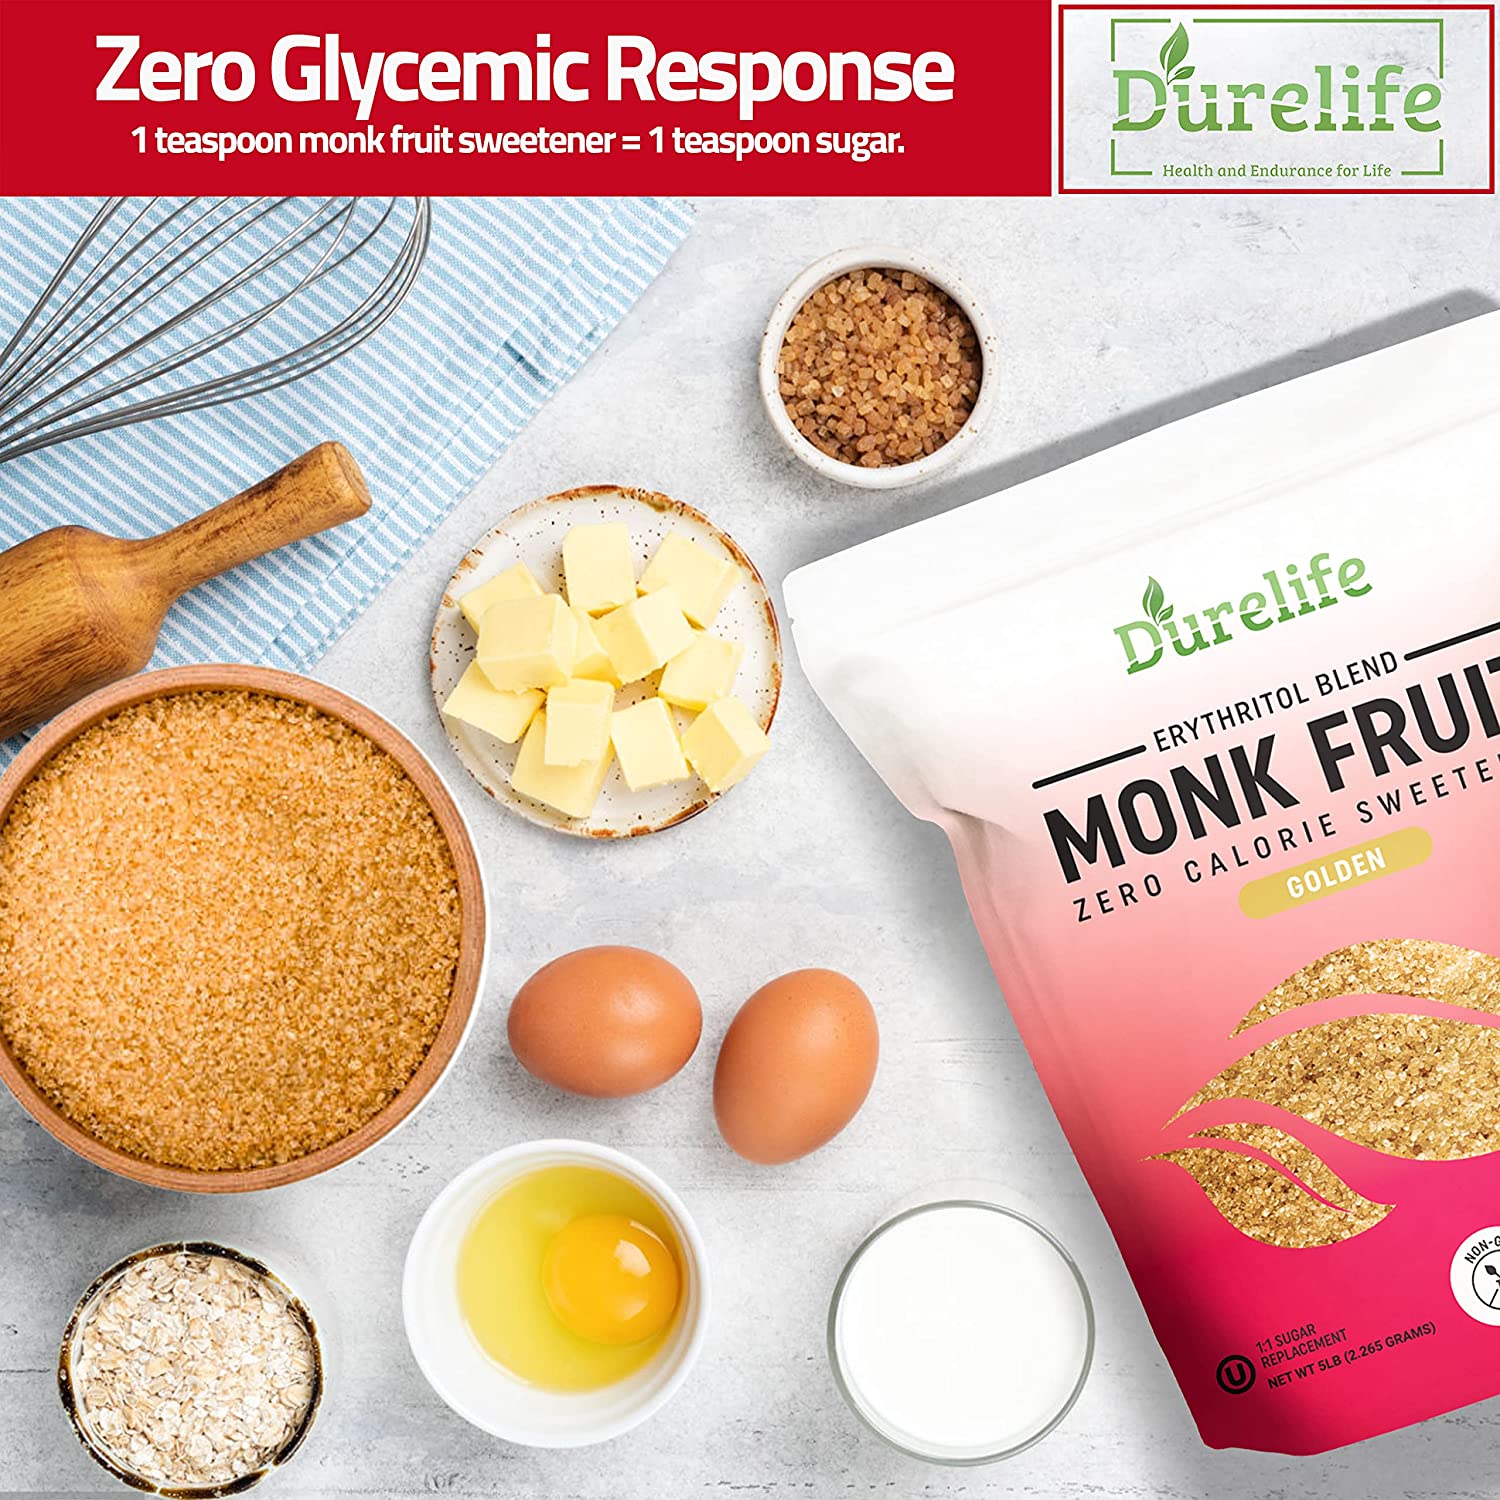 Durelife Monk Fruit Sweetener, 1:1 Sugar Replacement, Keto Diet Friend –  DureLife